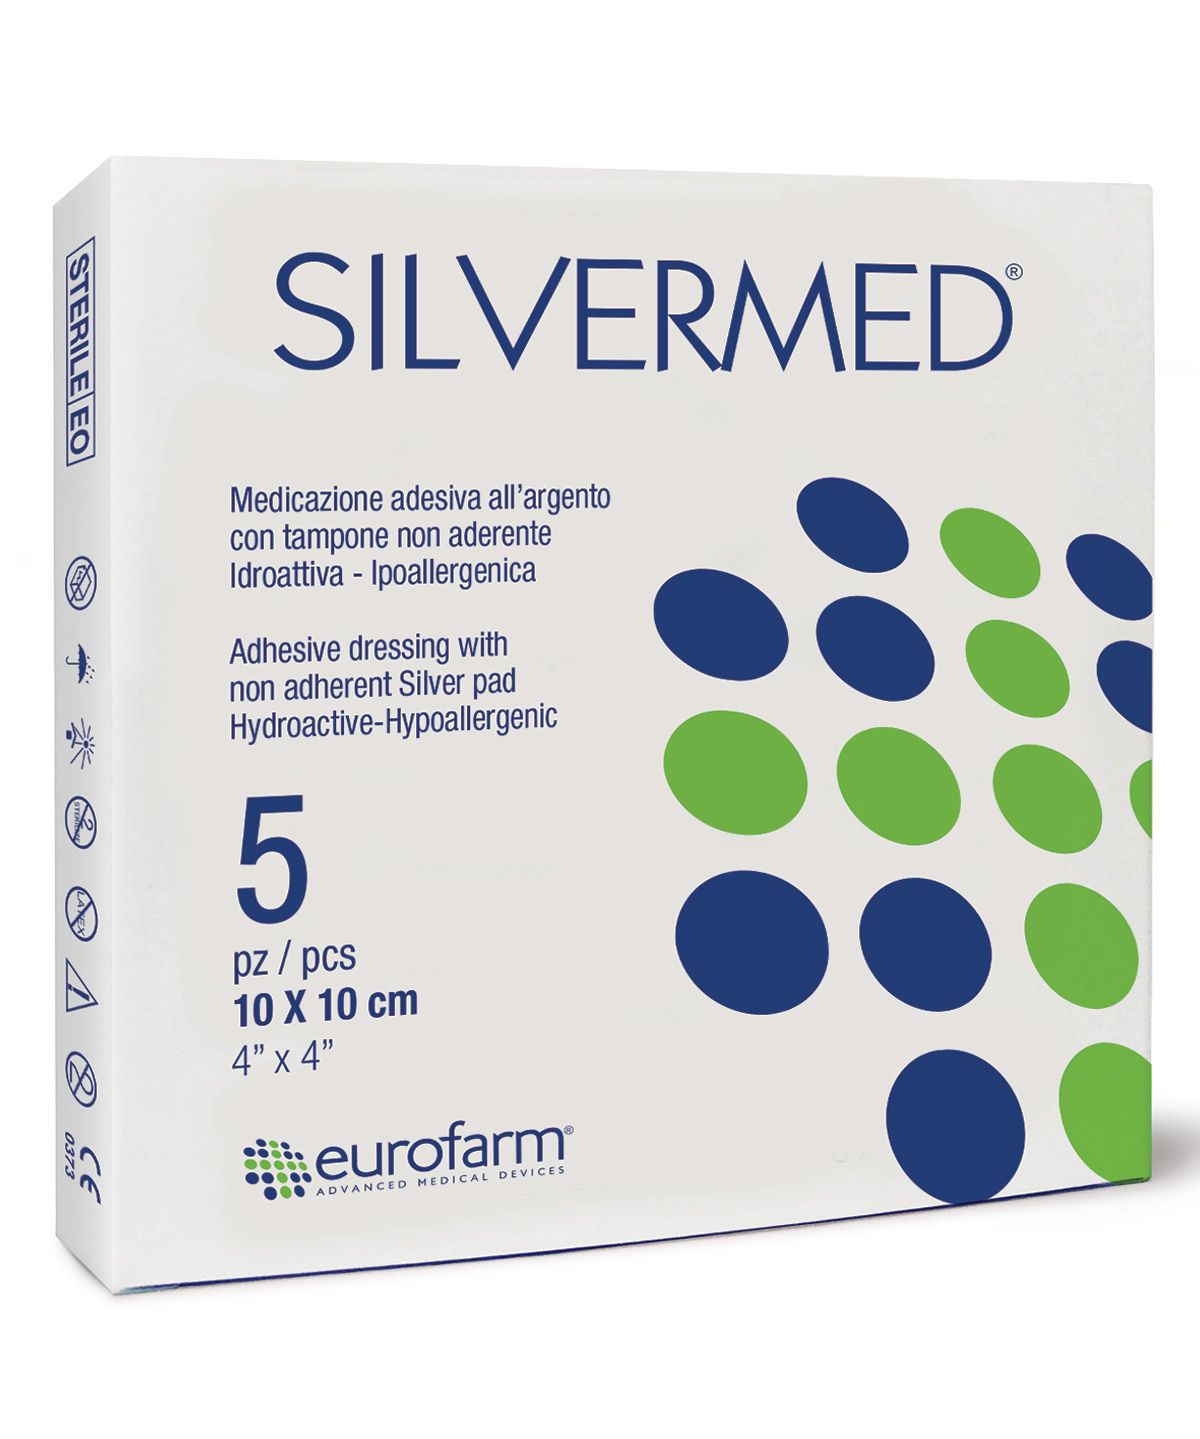 Medicazioni idroattive all’argento micronizzato